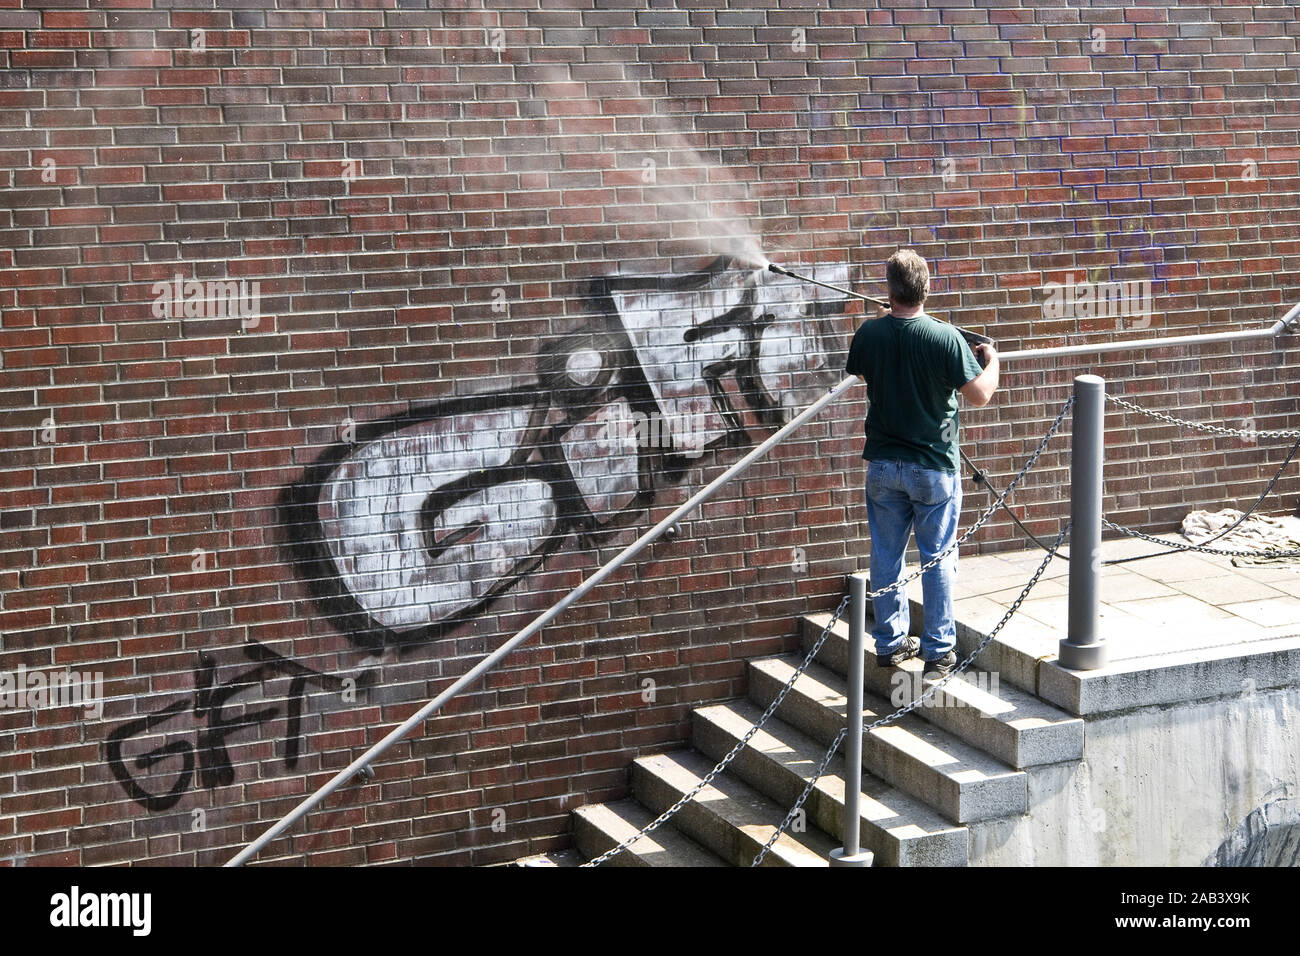 Mann und einer Mauer |Graffiti un homme enlevé un graffiti sur un mur| Banque D'Images